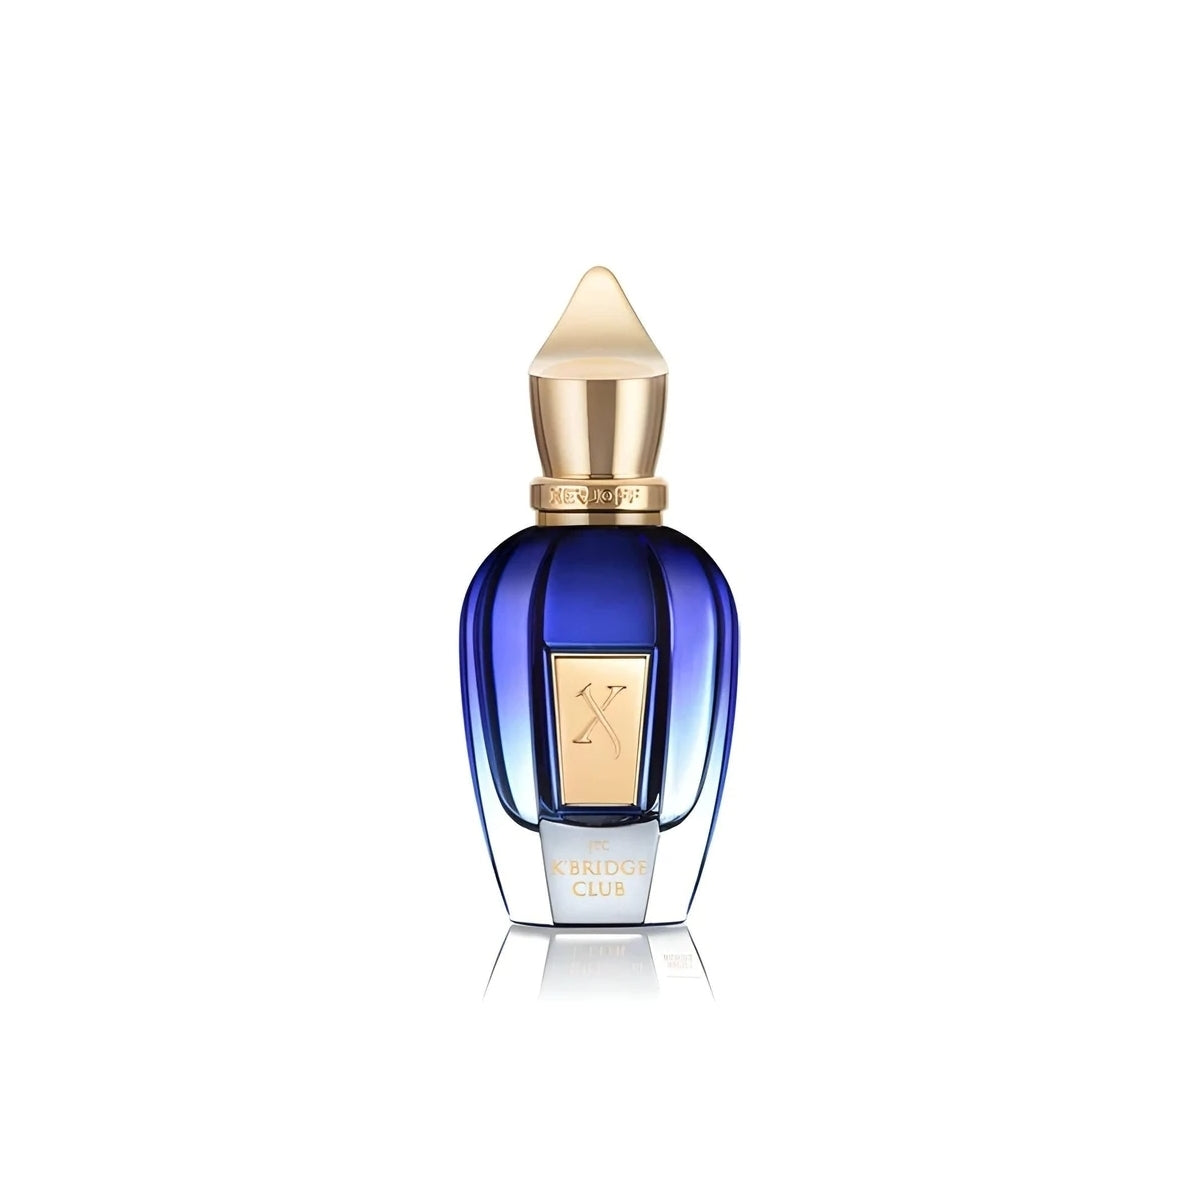 Parfums günstig kaufen -70% ✔️ Online-Parfümerie